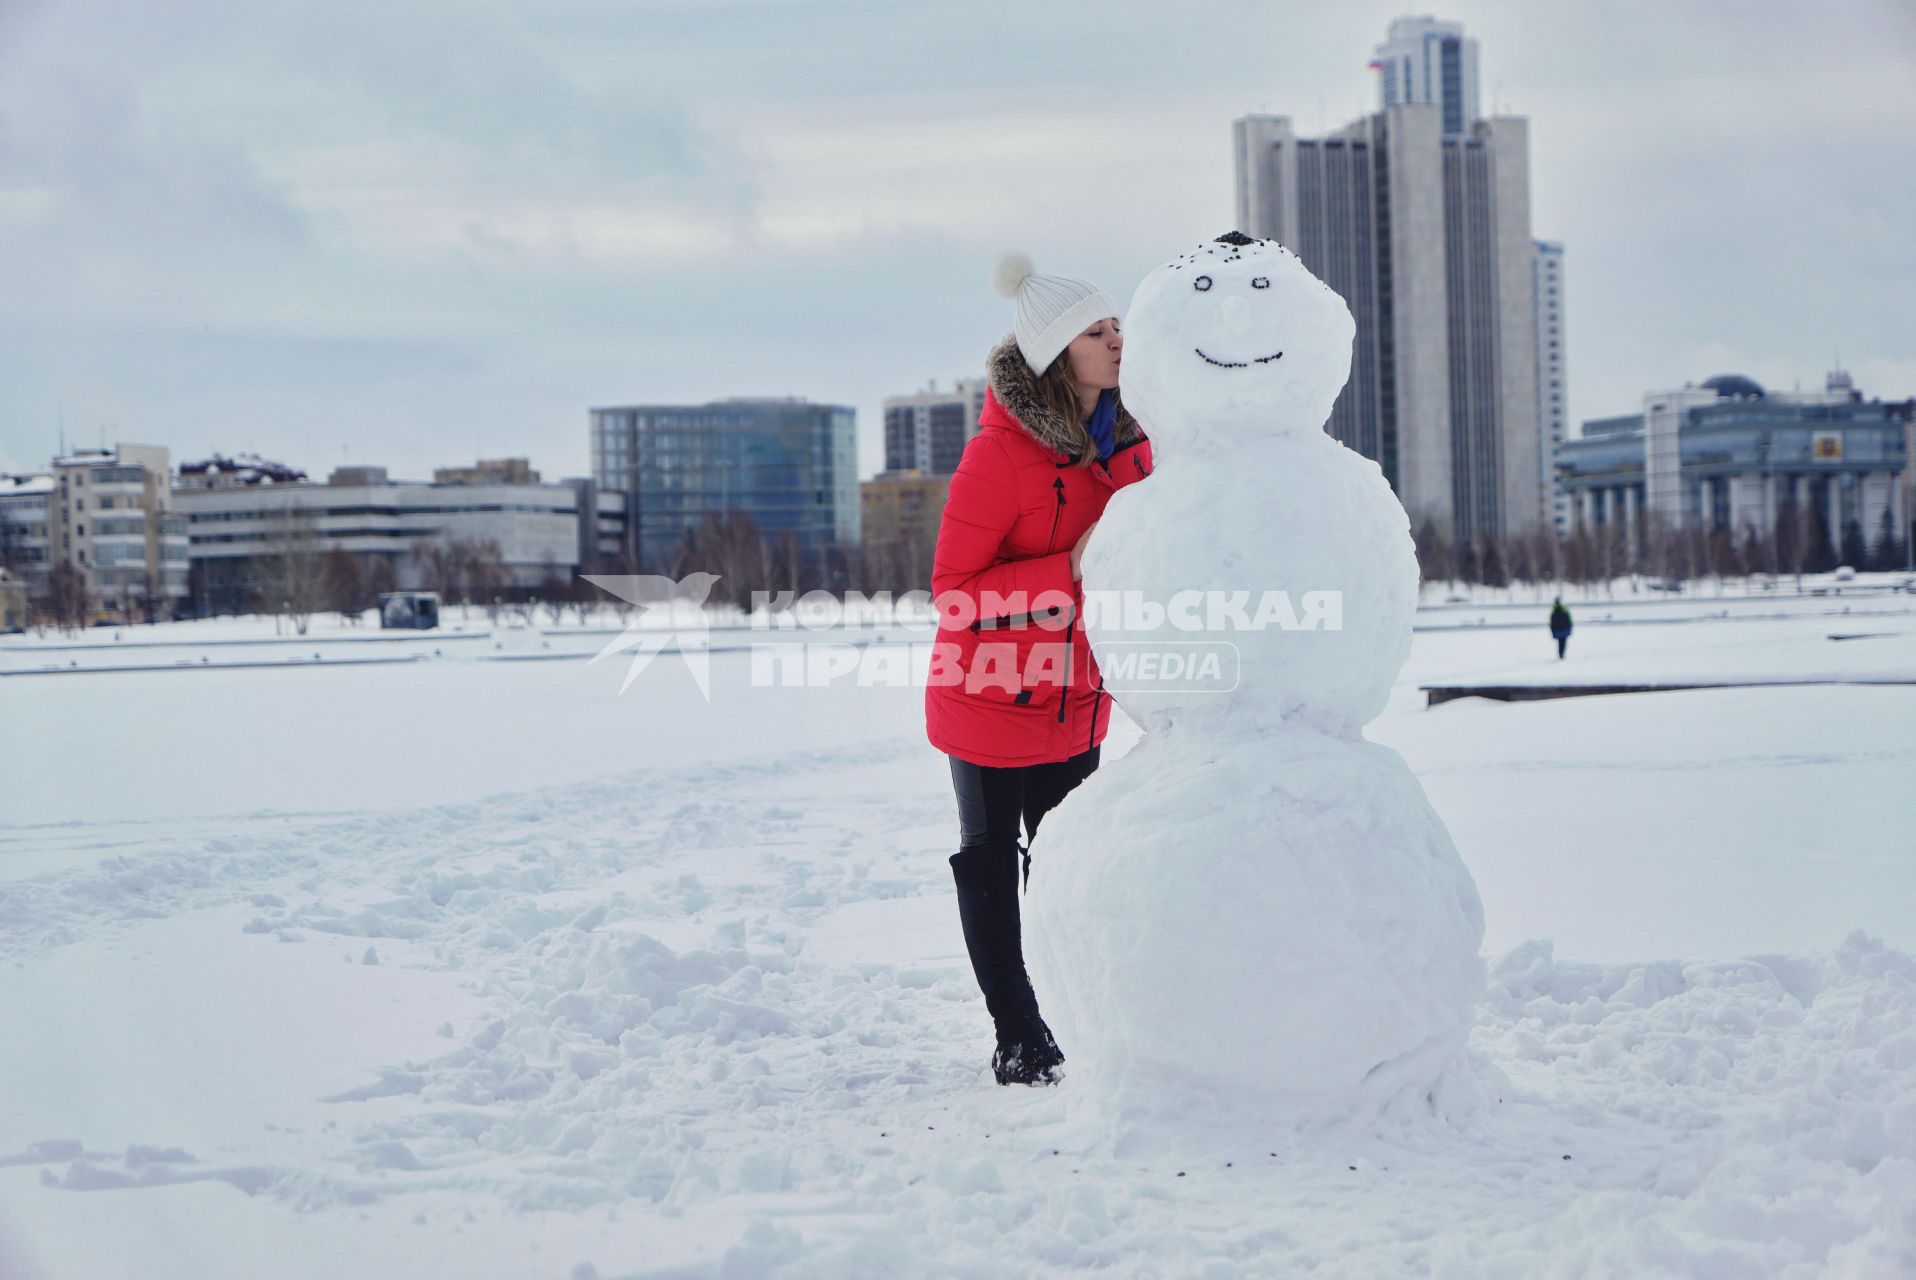 Екатеринбург. Девушка целует снеговика.